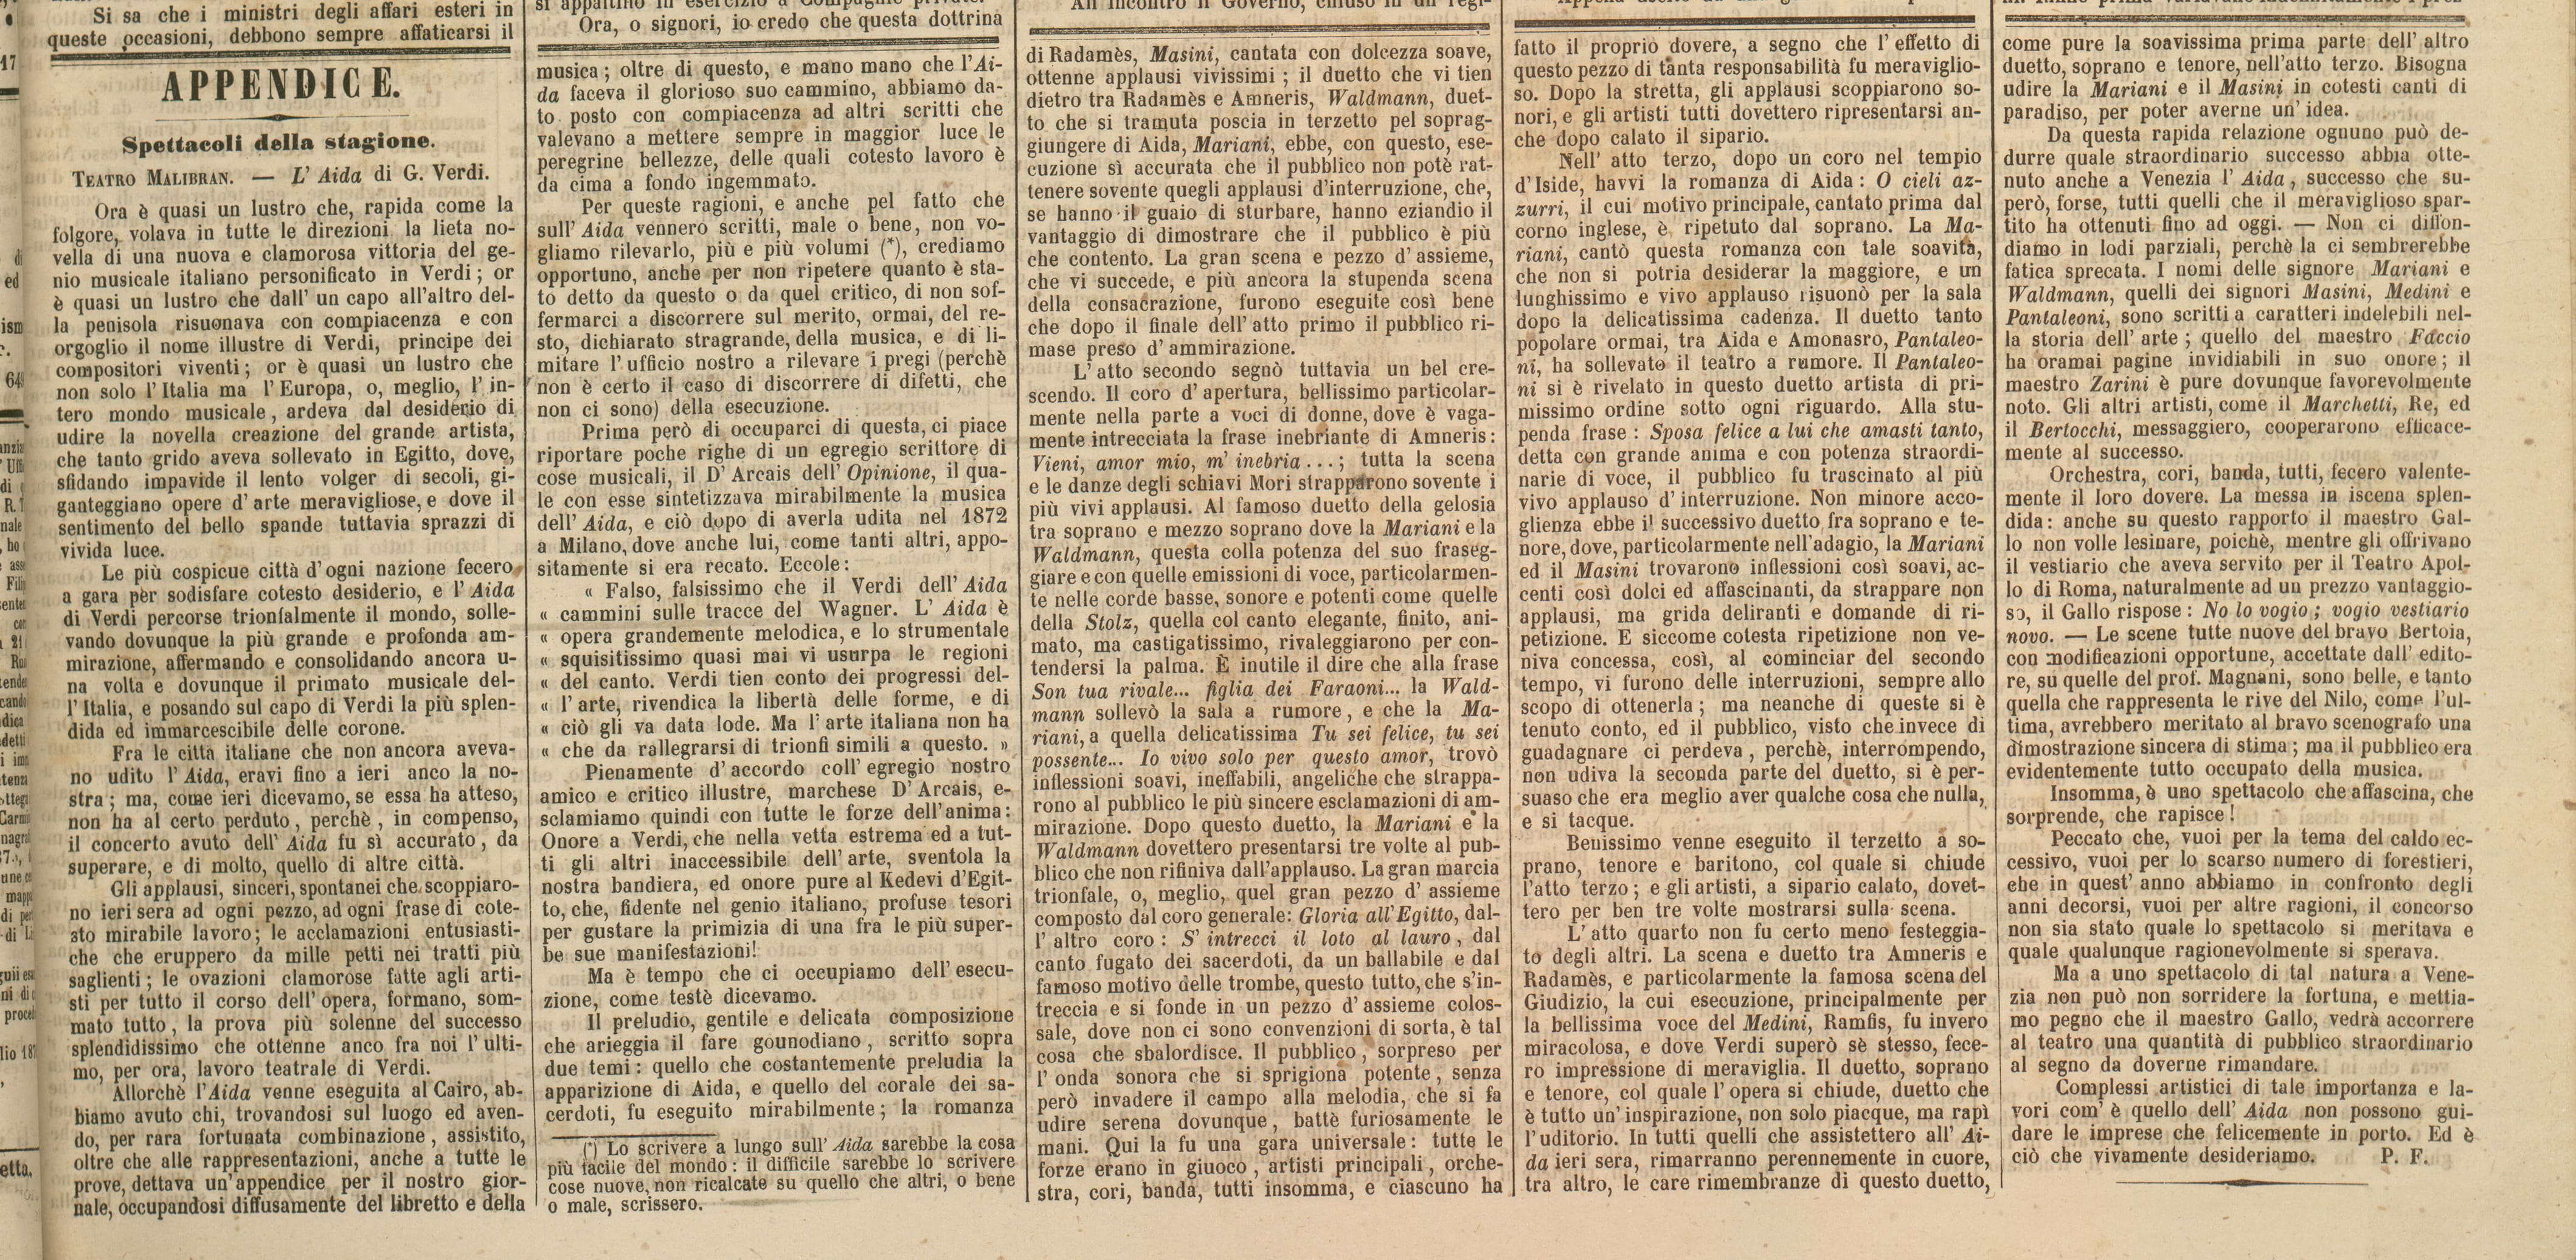 Gazzetta di Venezia, 12 luglio 1876